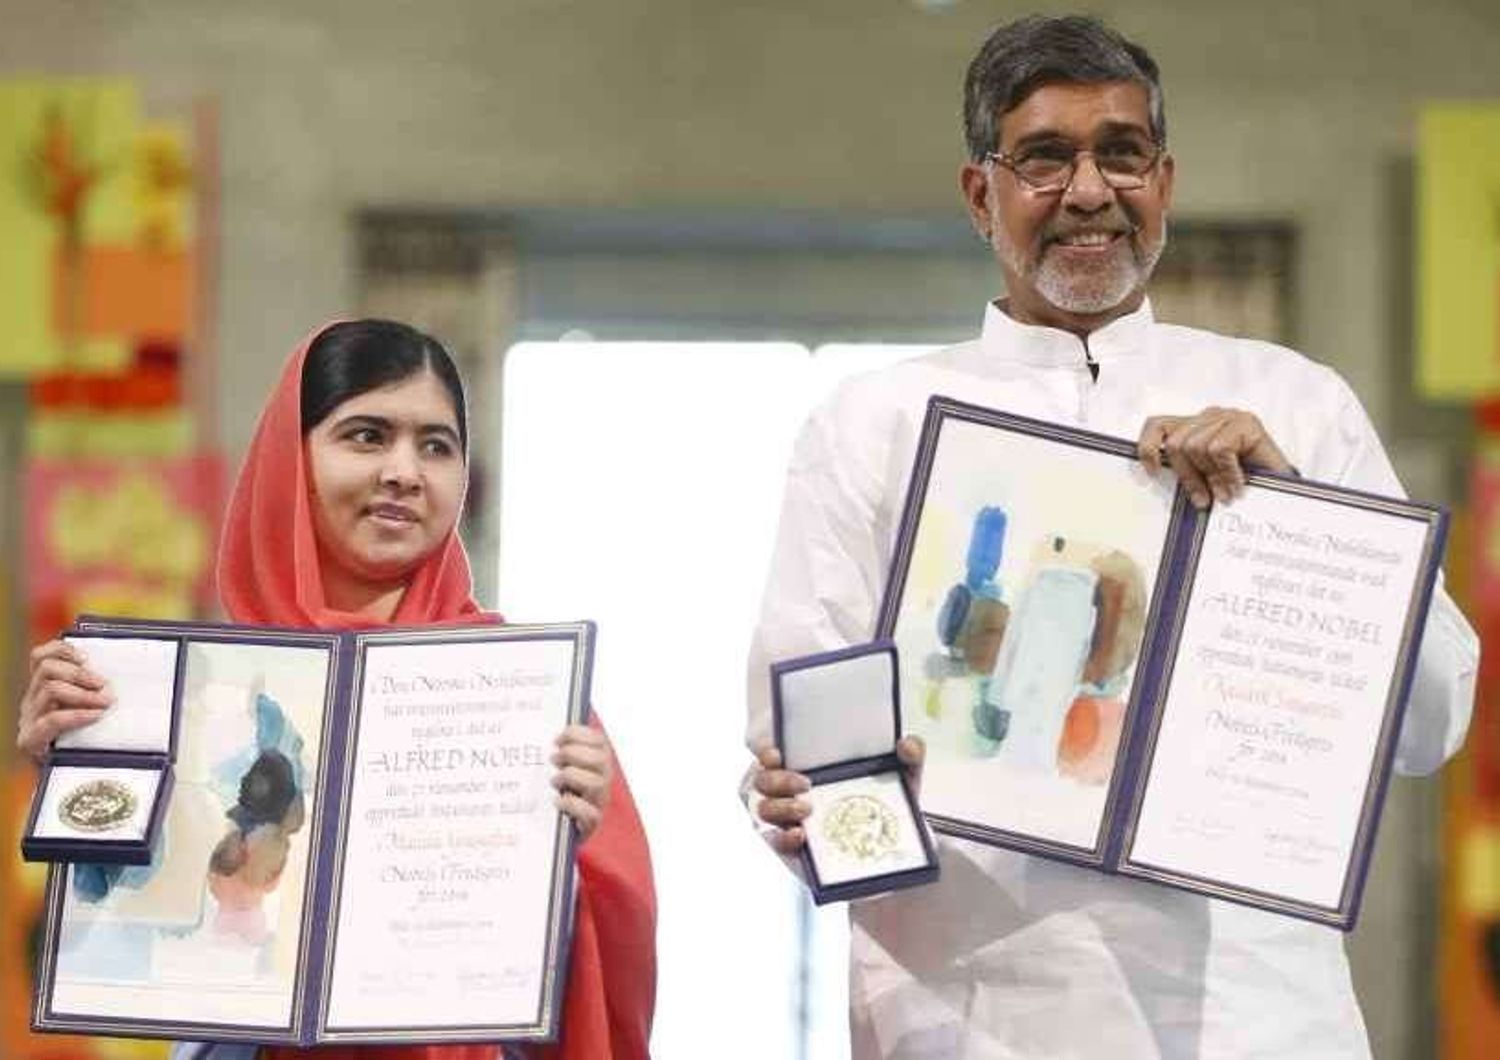 Consegnati i Nobel per la pace: Malala, "voglio fare il premier"